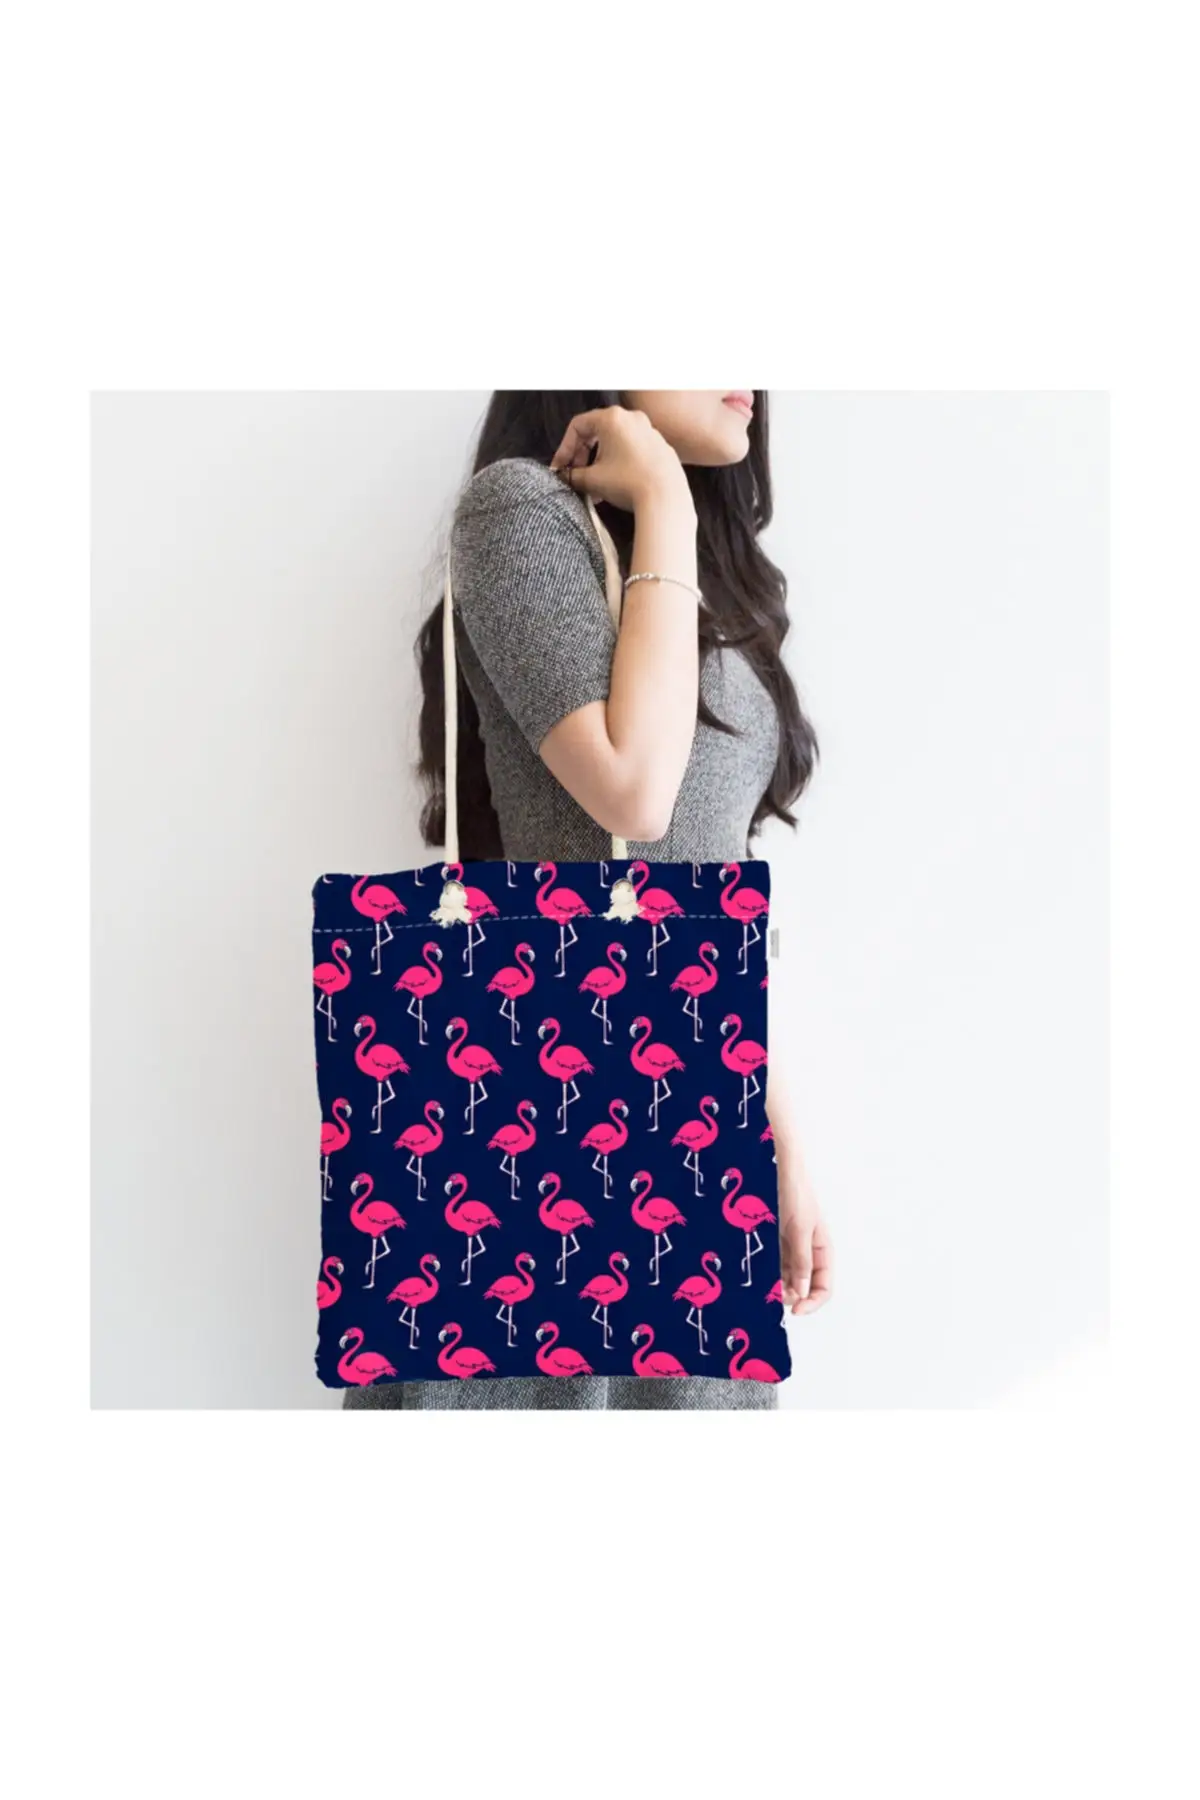 

Женская пляжная сумка на молнии, современный тоут с принтом фламинго на синем фоне, модная летняя большая сумка-шоппер на плечо